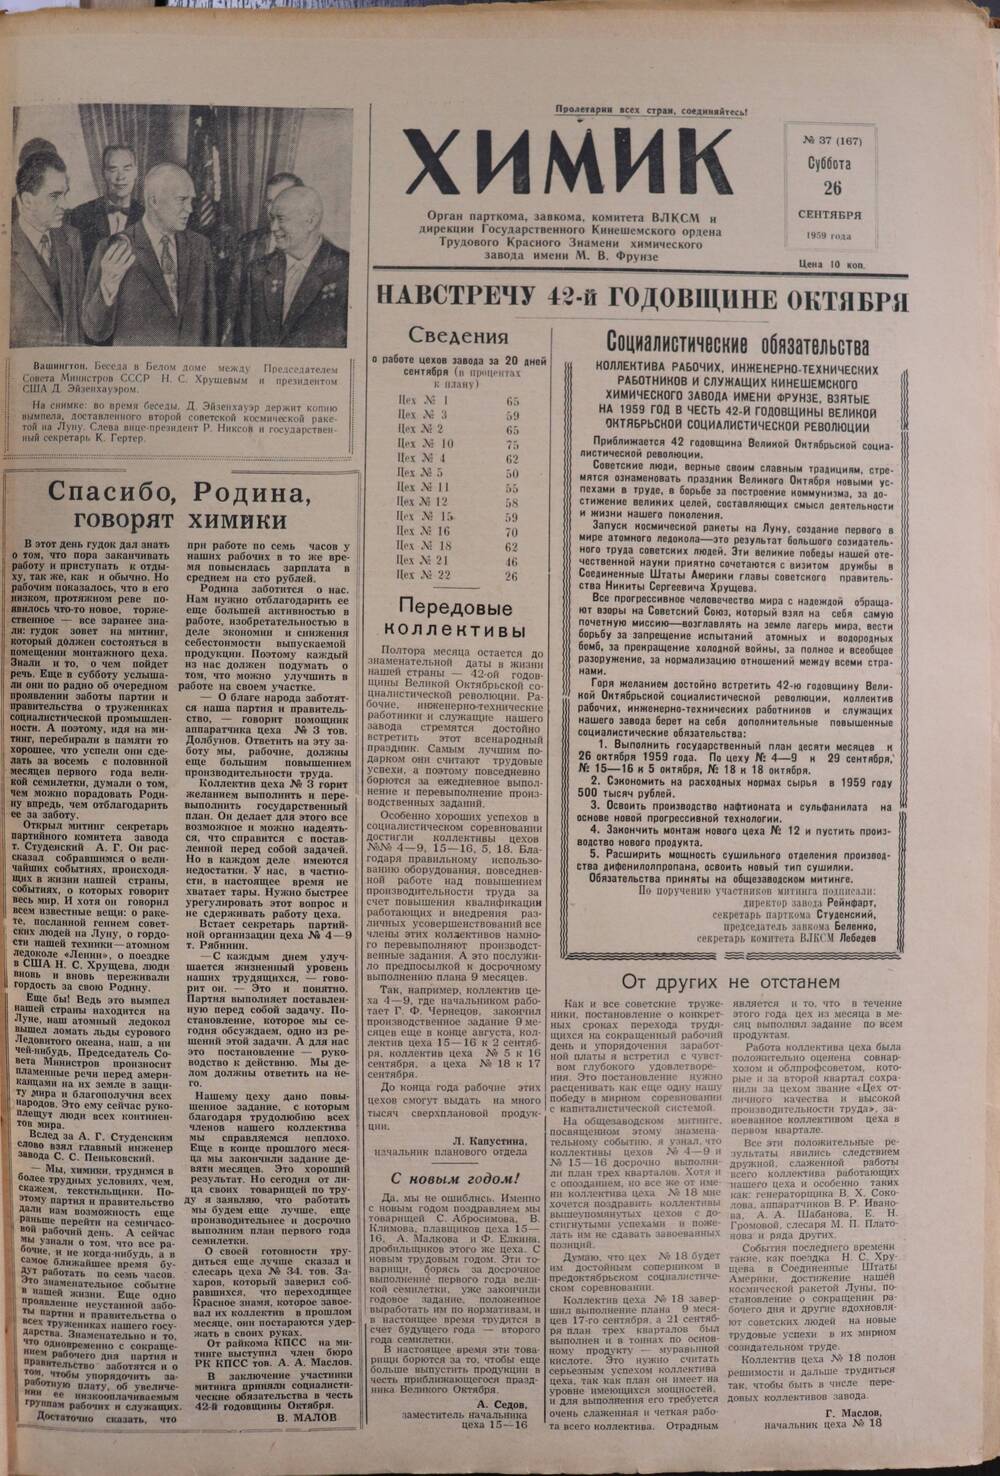 Газета «Химик» № 37 от 26 сентября 1959 года.